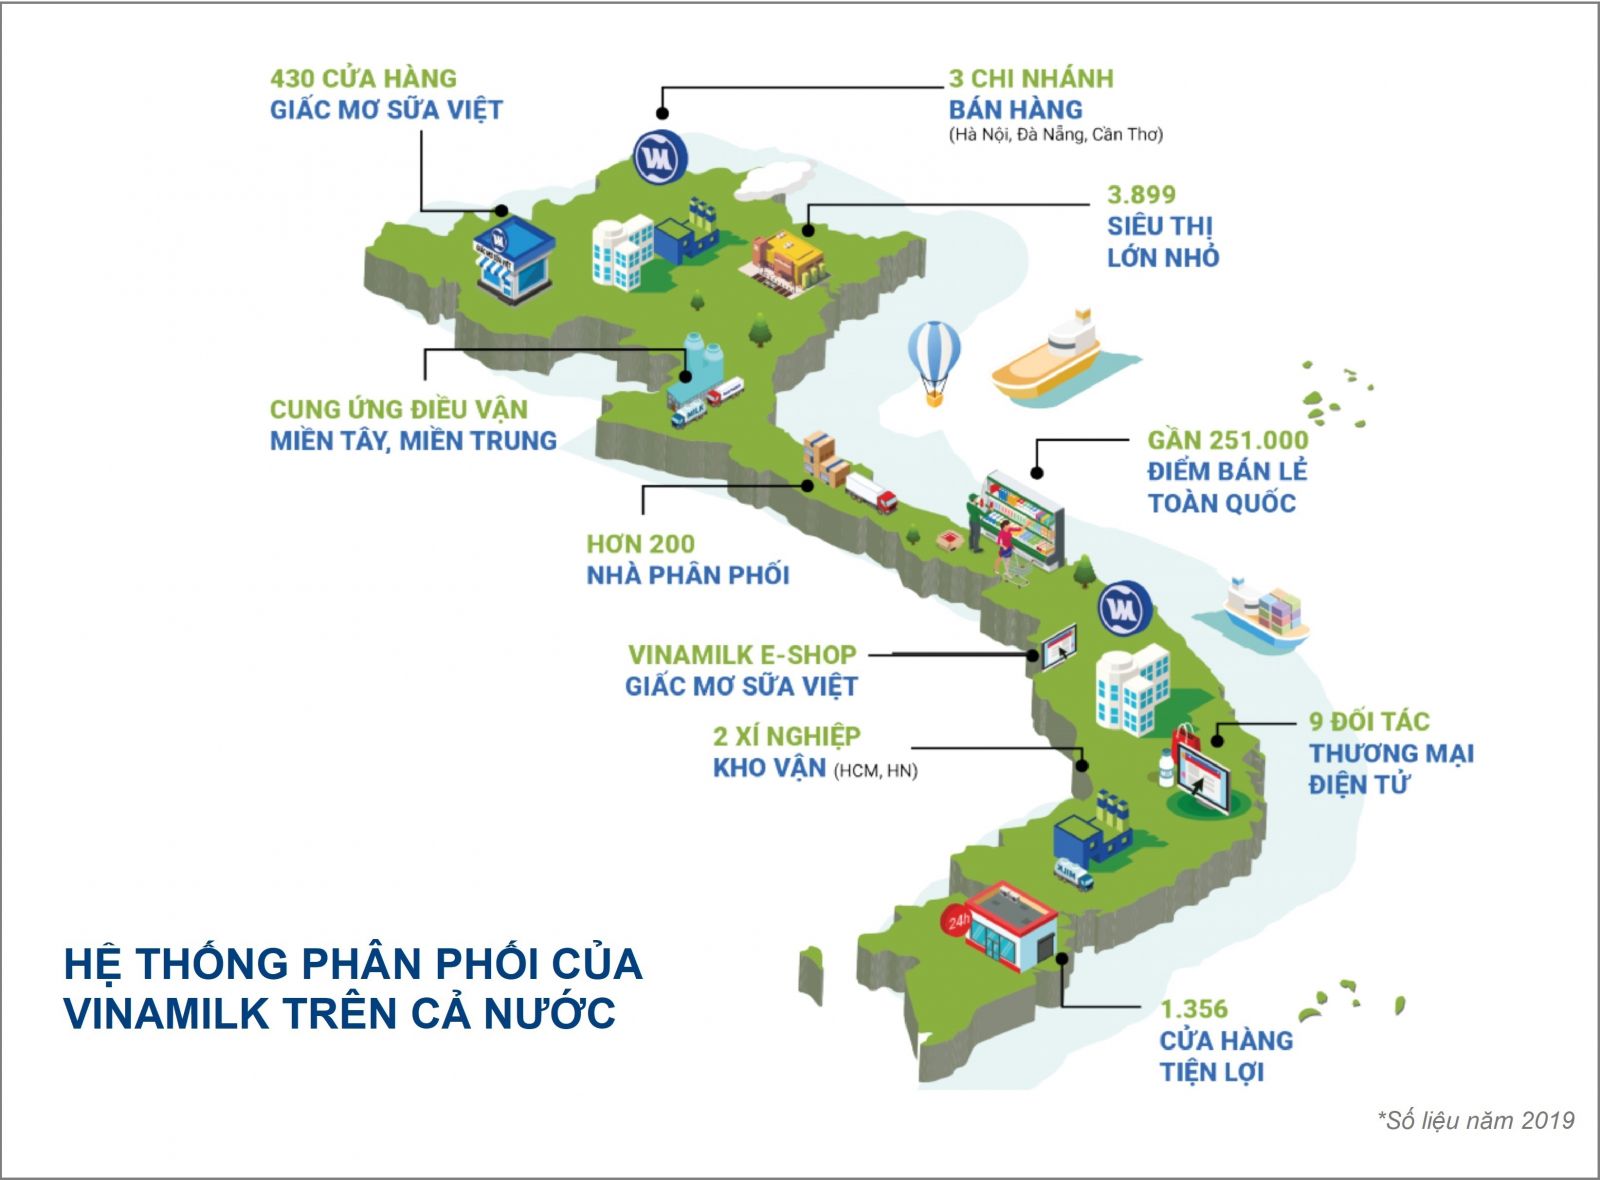 Giá trị thương hiệu Vinamilk được định giá hơn 2,4 tỷ USD, chiếm 20% tổng giá trị của 50 thương hiệu dẫn đầu Việt Nam 2020